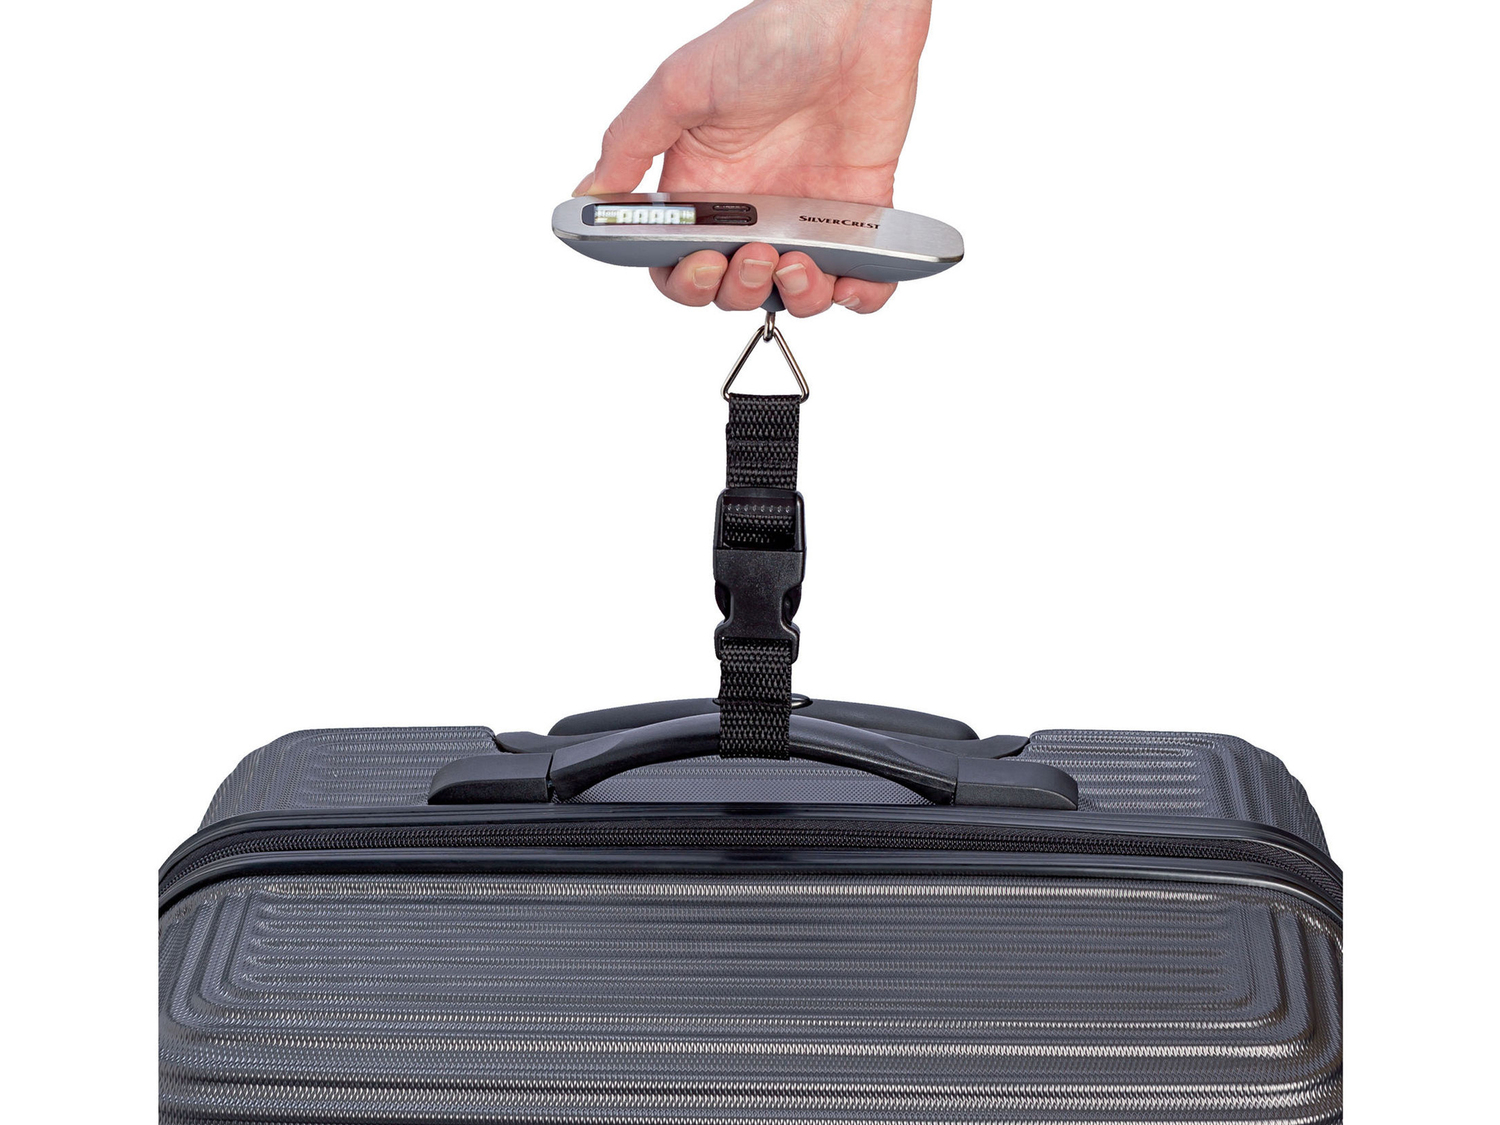 Bilancia per valigia Silvercrest, prezzo 5.99 € 
- Portata: max. 50 kg
- Funzione ...